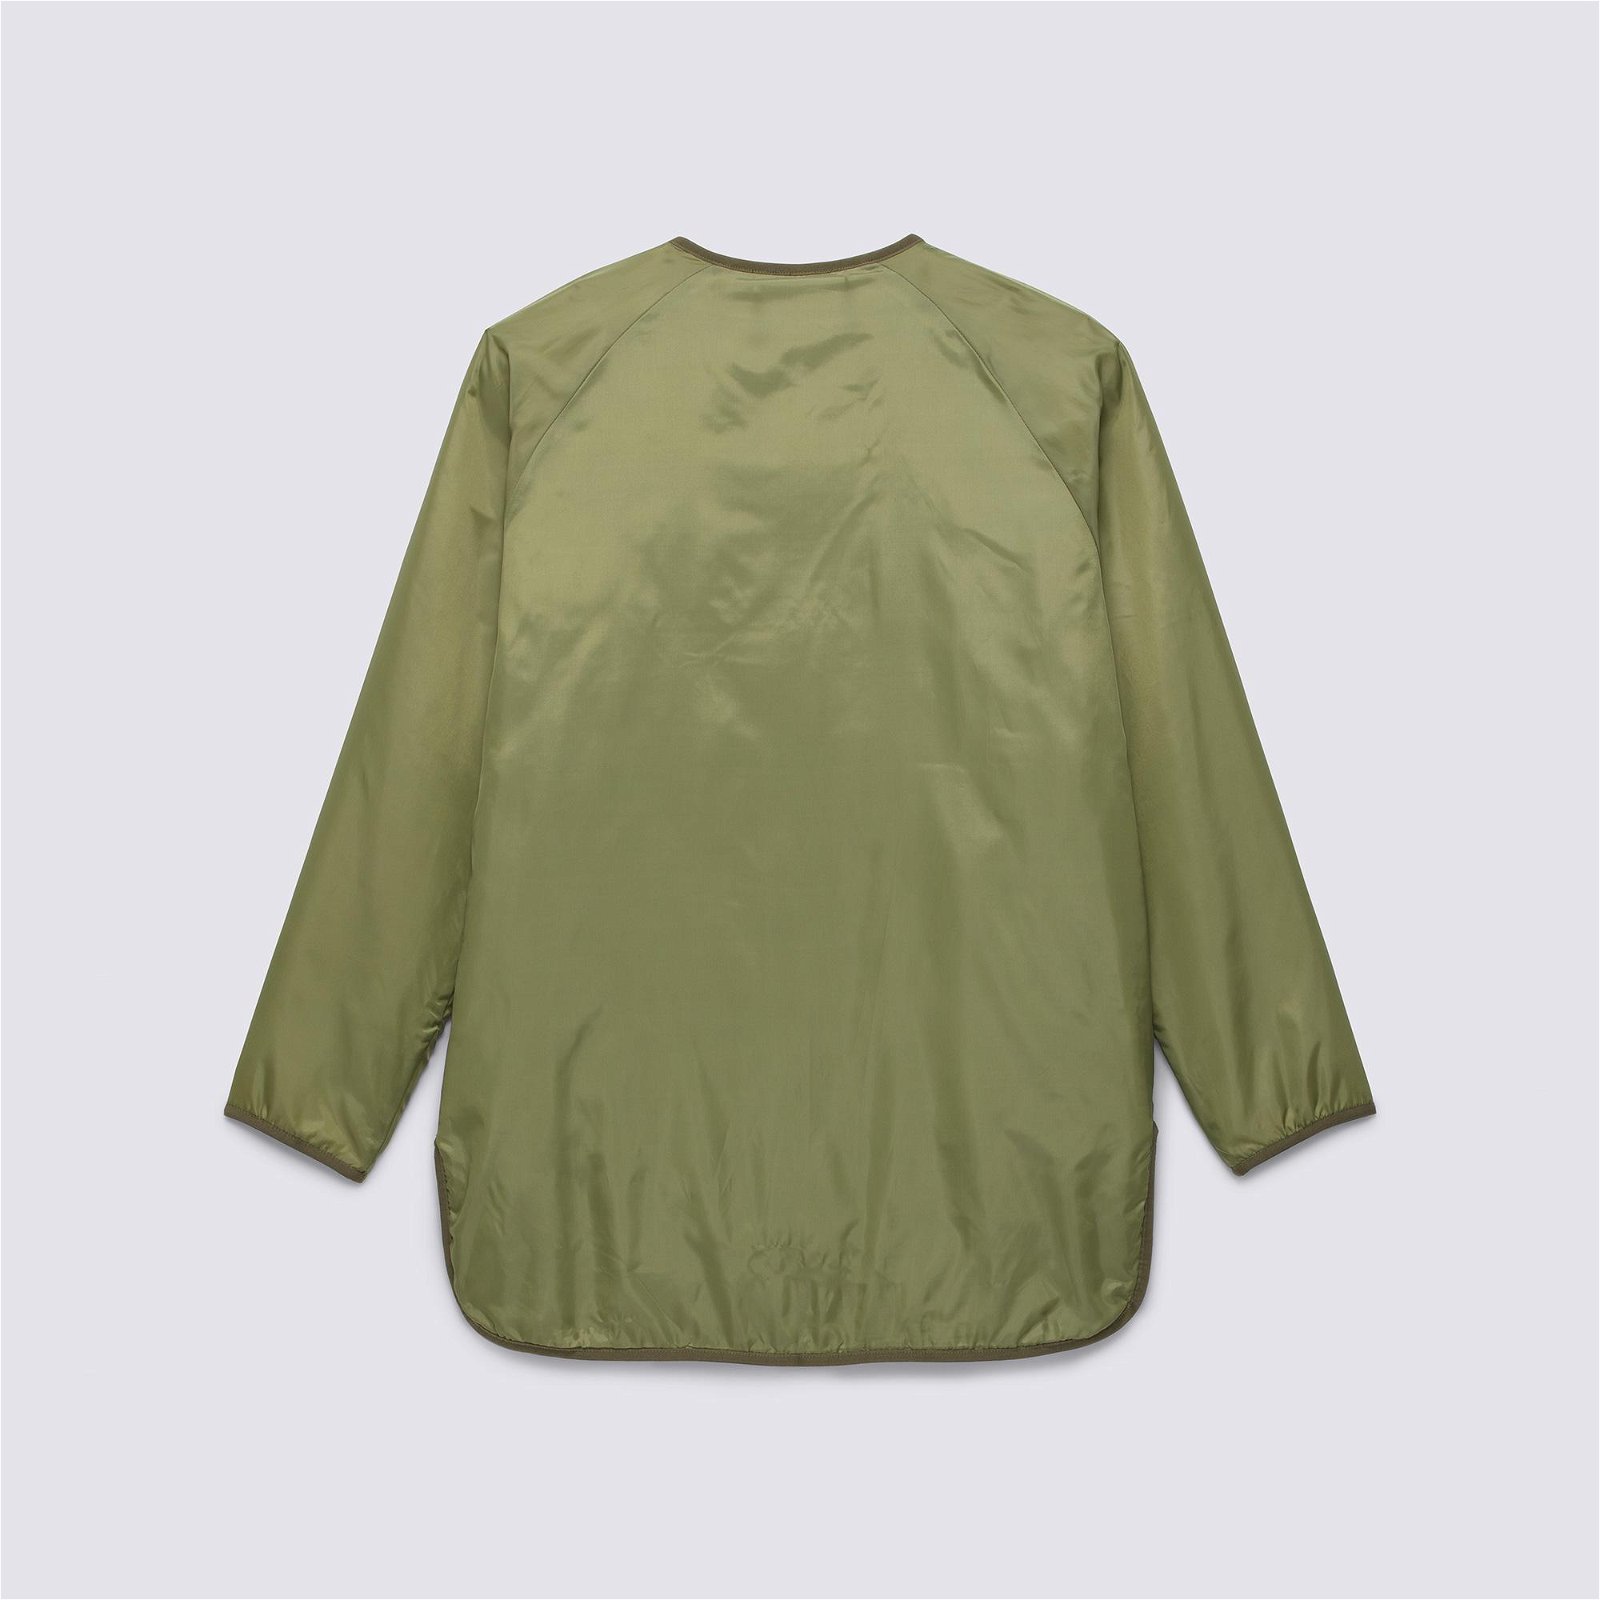 Vans Peake Quilted Kadın Yeşil Ceket